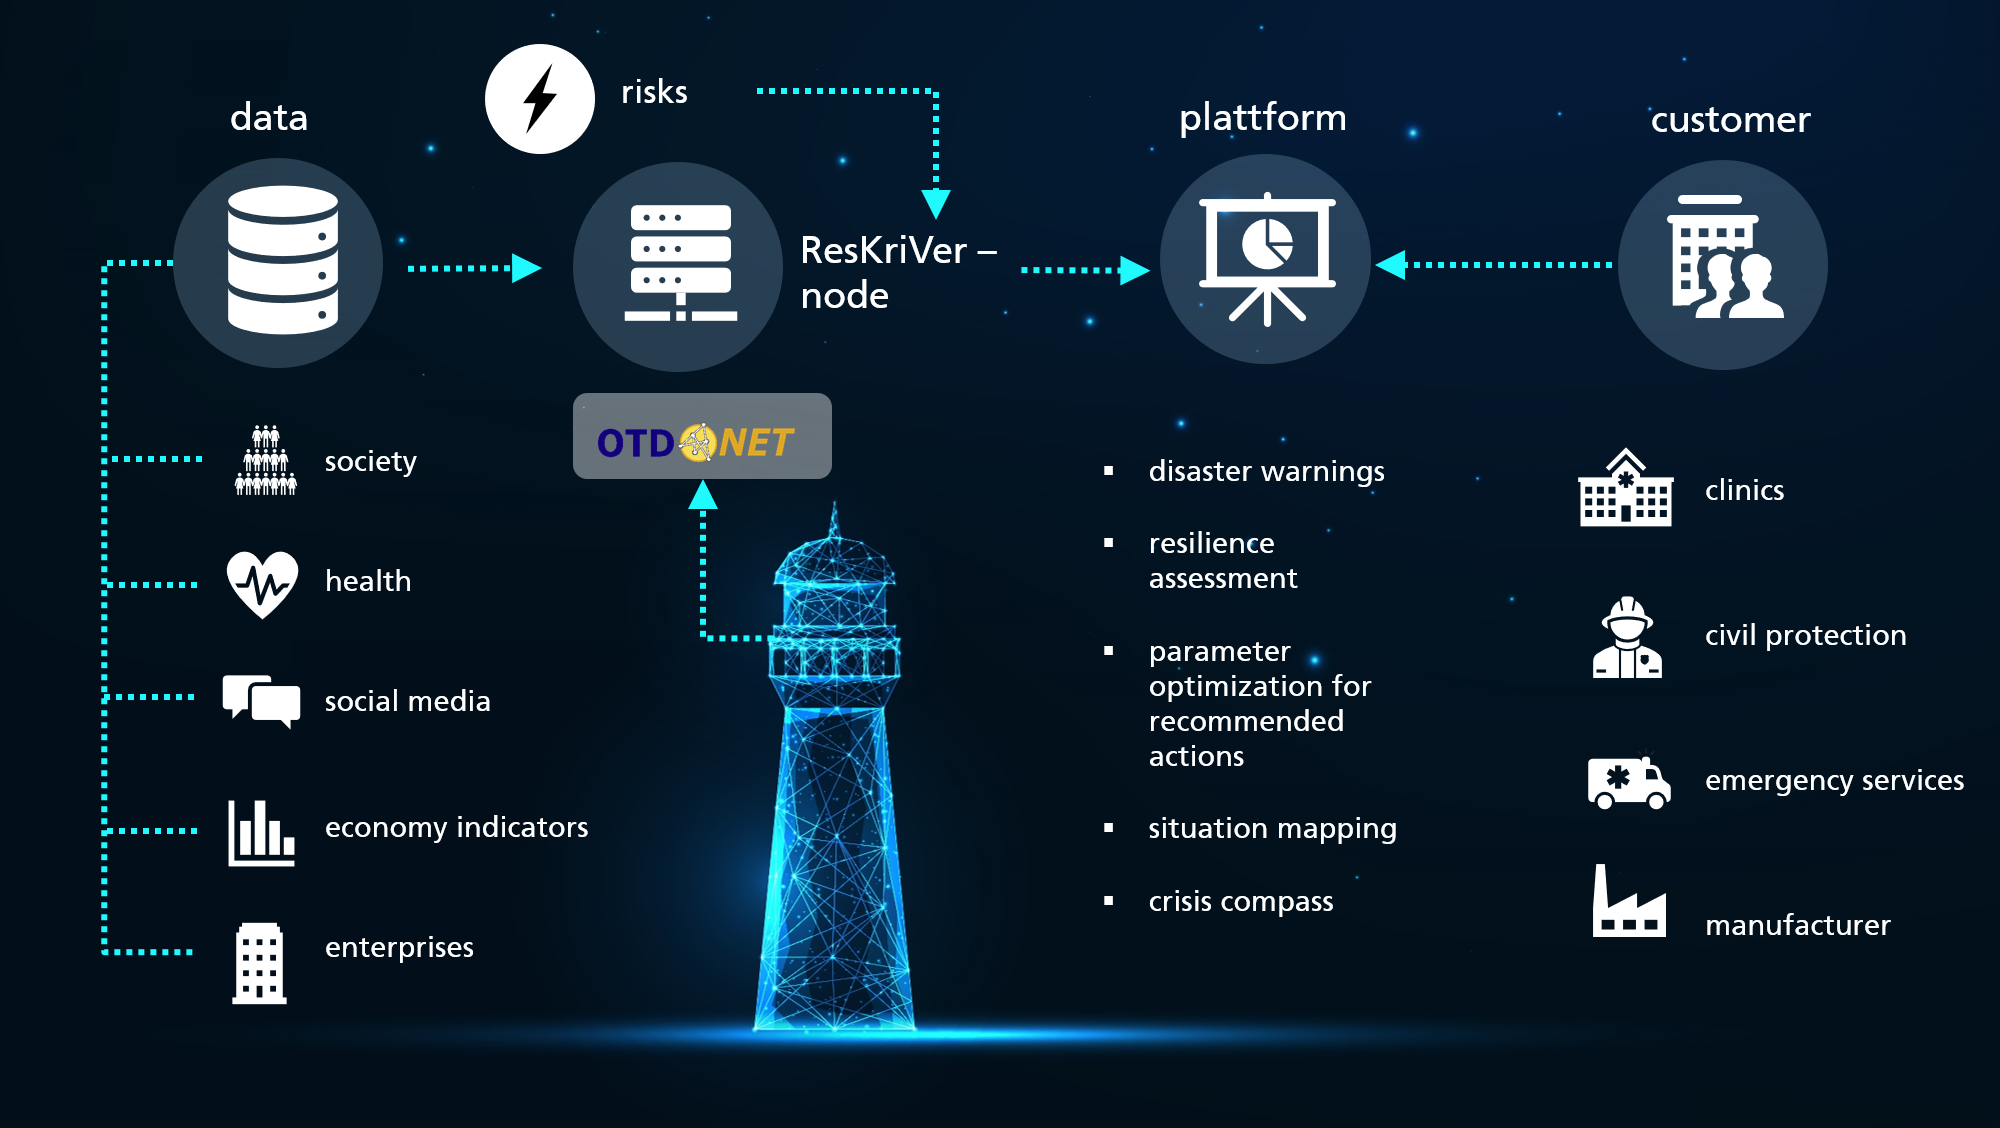 data, platform and usage of ResKriVer node